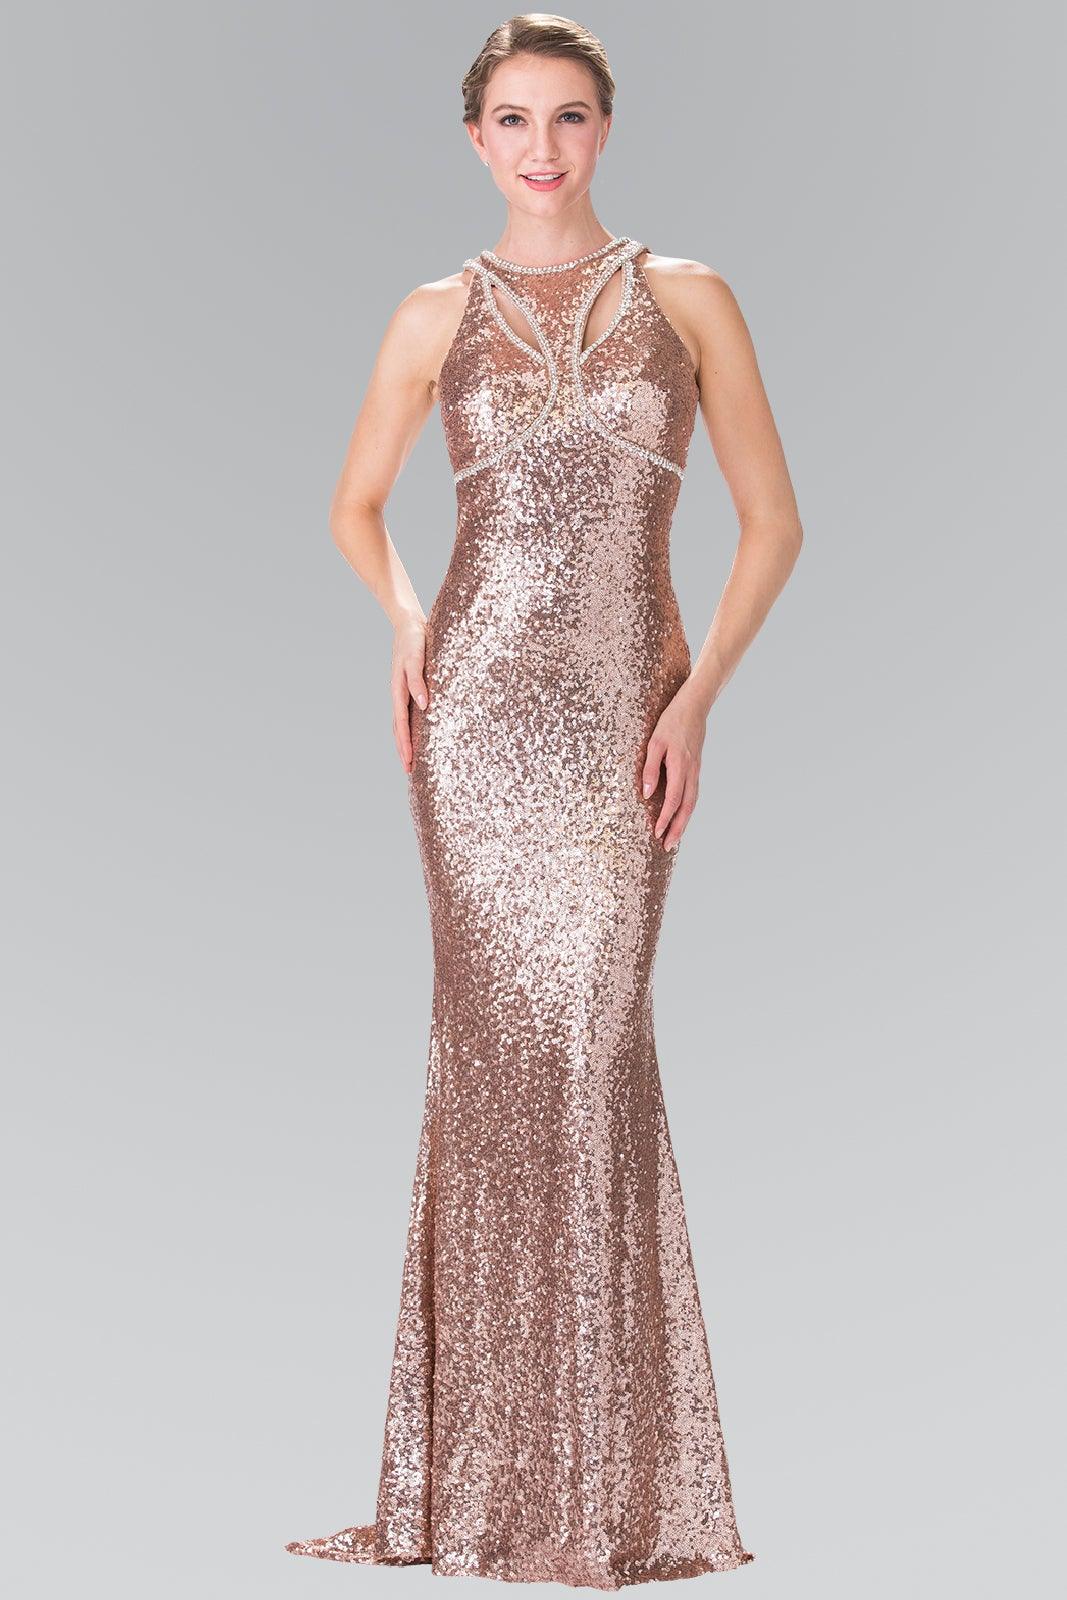 Prom Long Formal Halter Neck Beaded Evening Dress - The Dress Outlet Elizabeth K